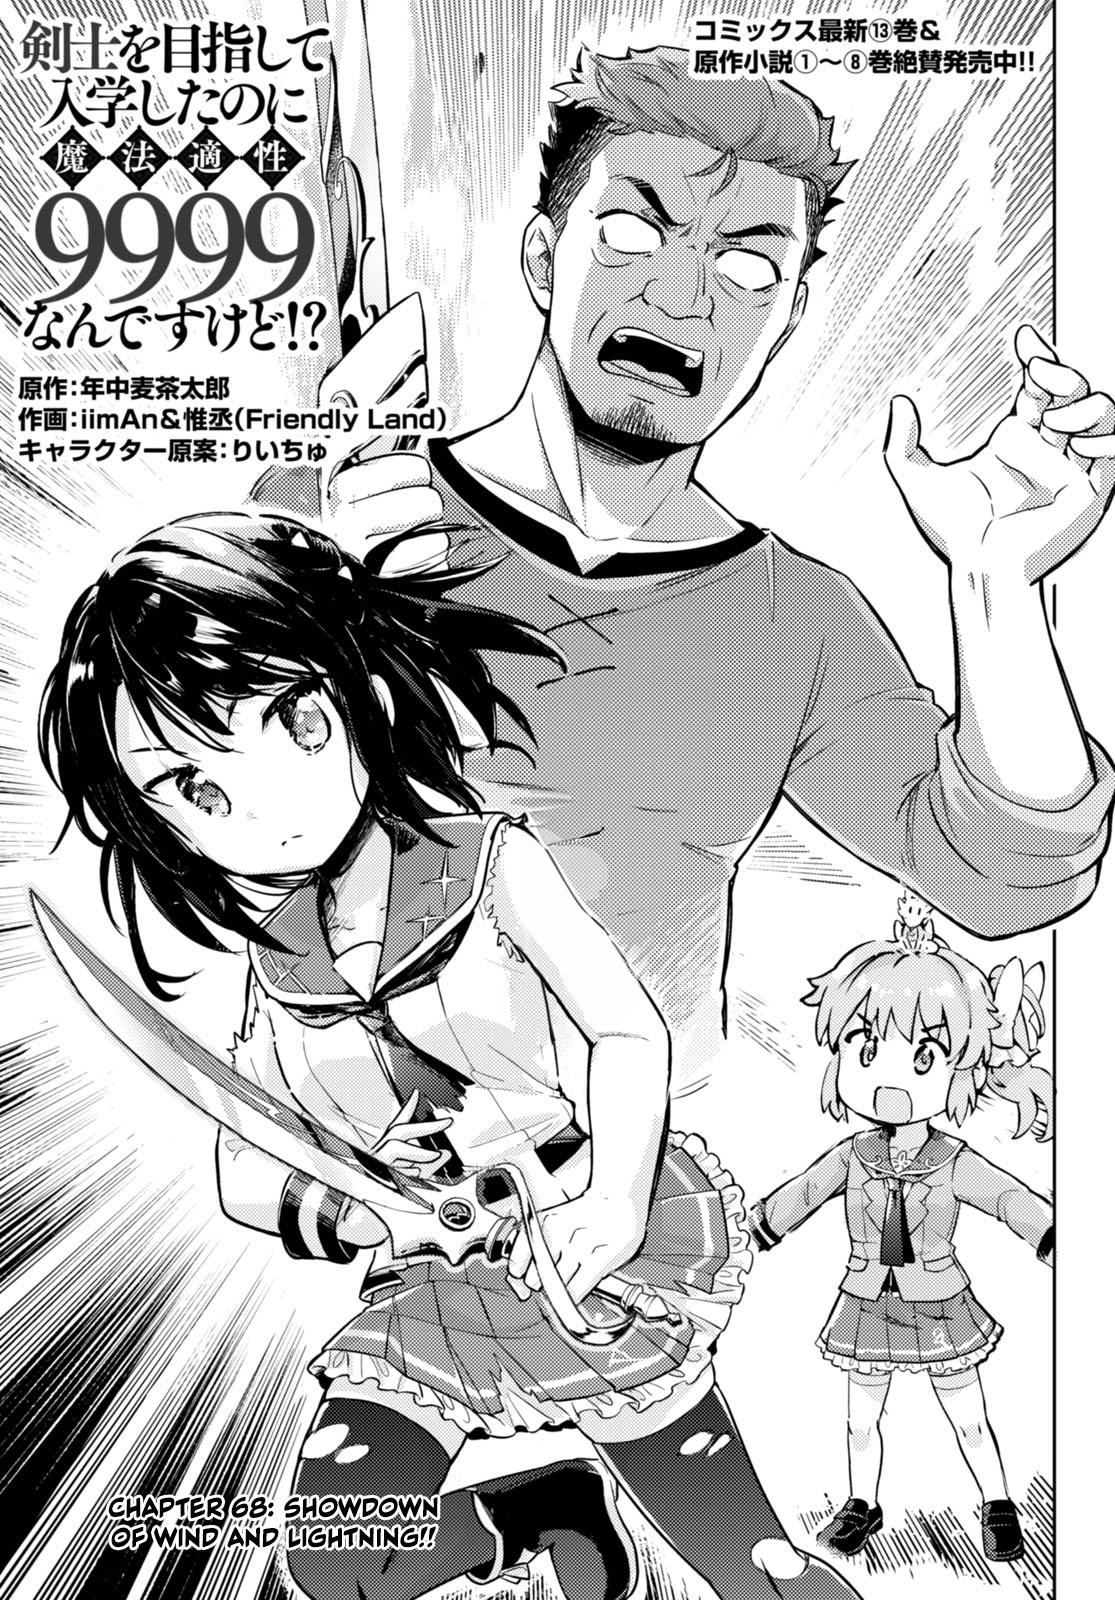 Kenshi O Mezashite Nyugaku Shitanoni Maho Tekisei 9999 Nandesukedo!? Chapter 68: Showdown Of Wind And Lightning!! - Picture 1